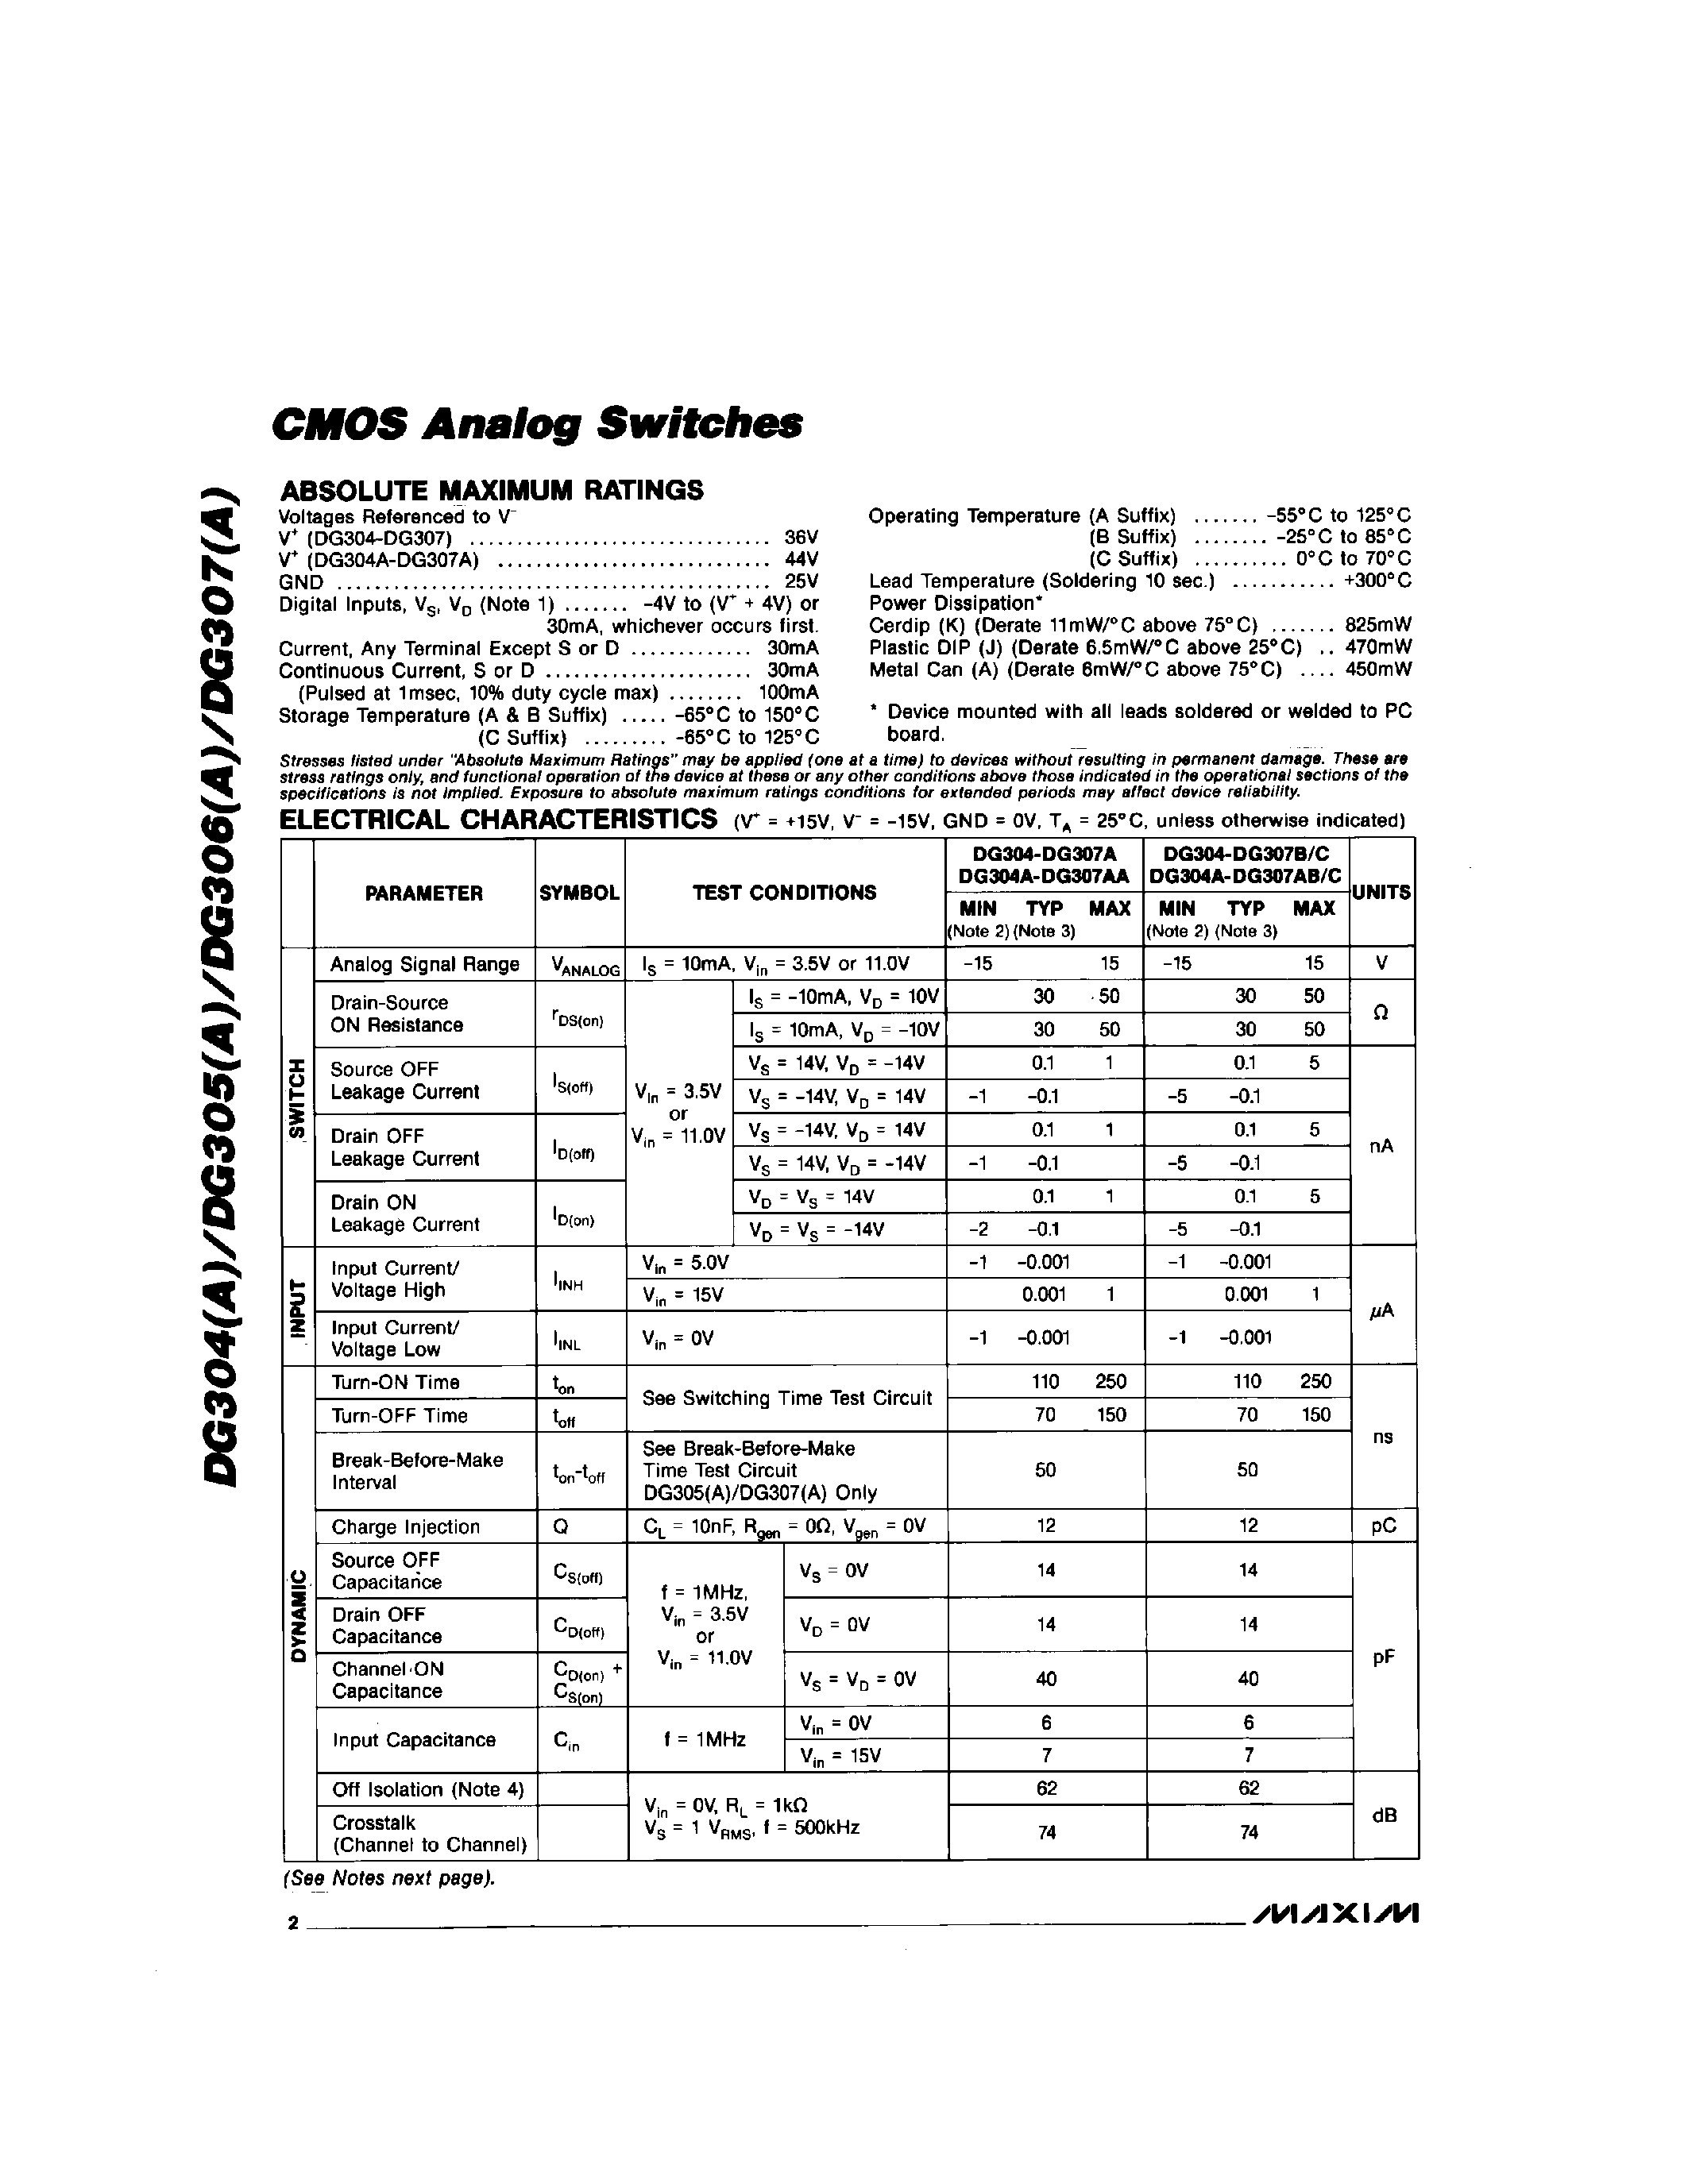 Даташит DG304C/D - CMOS Analog Switchs страница 2